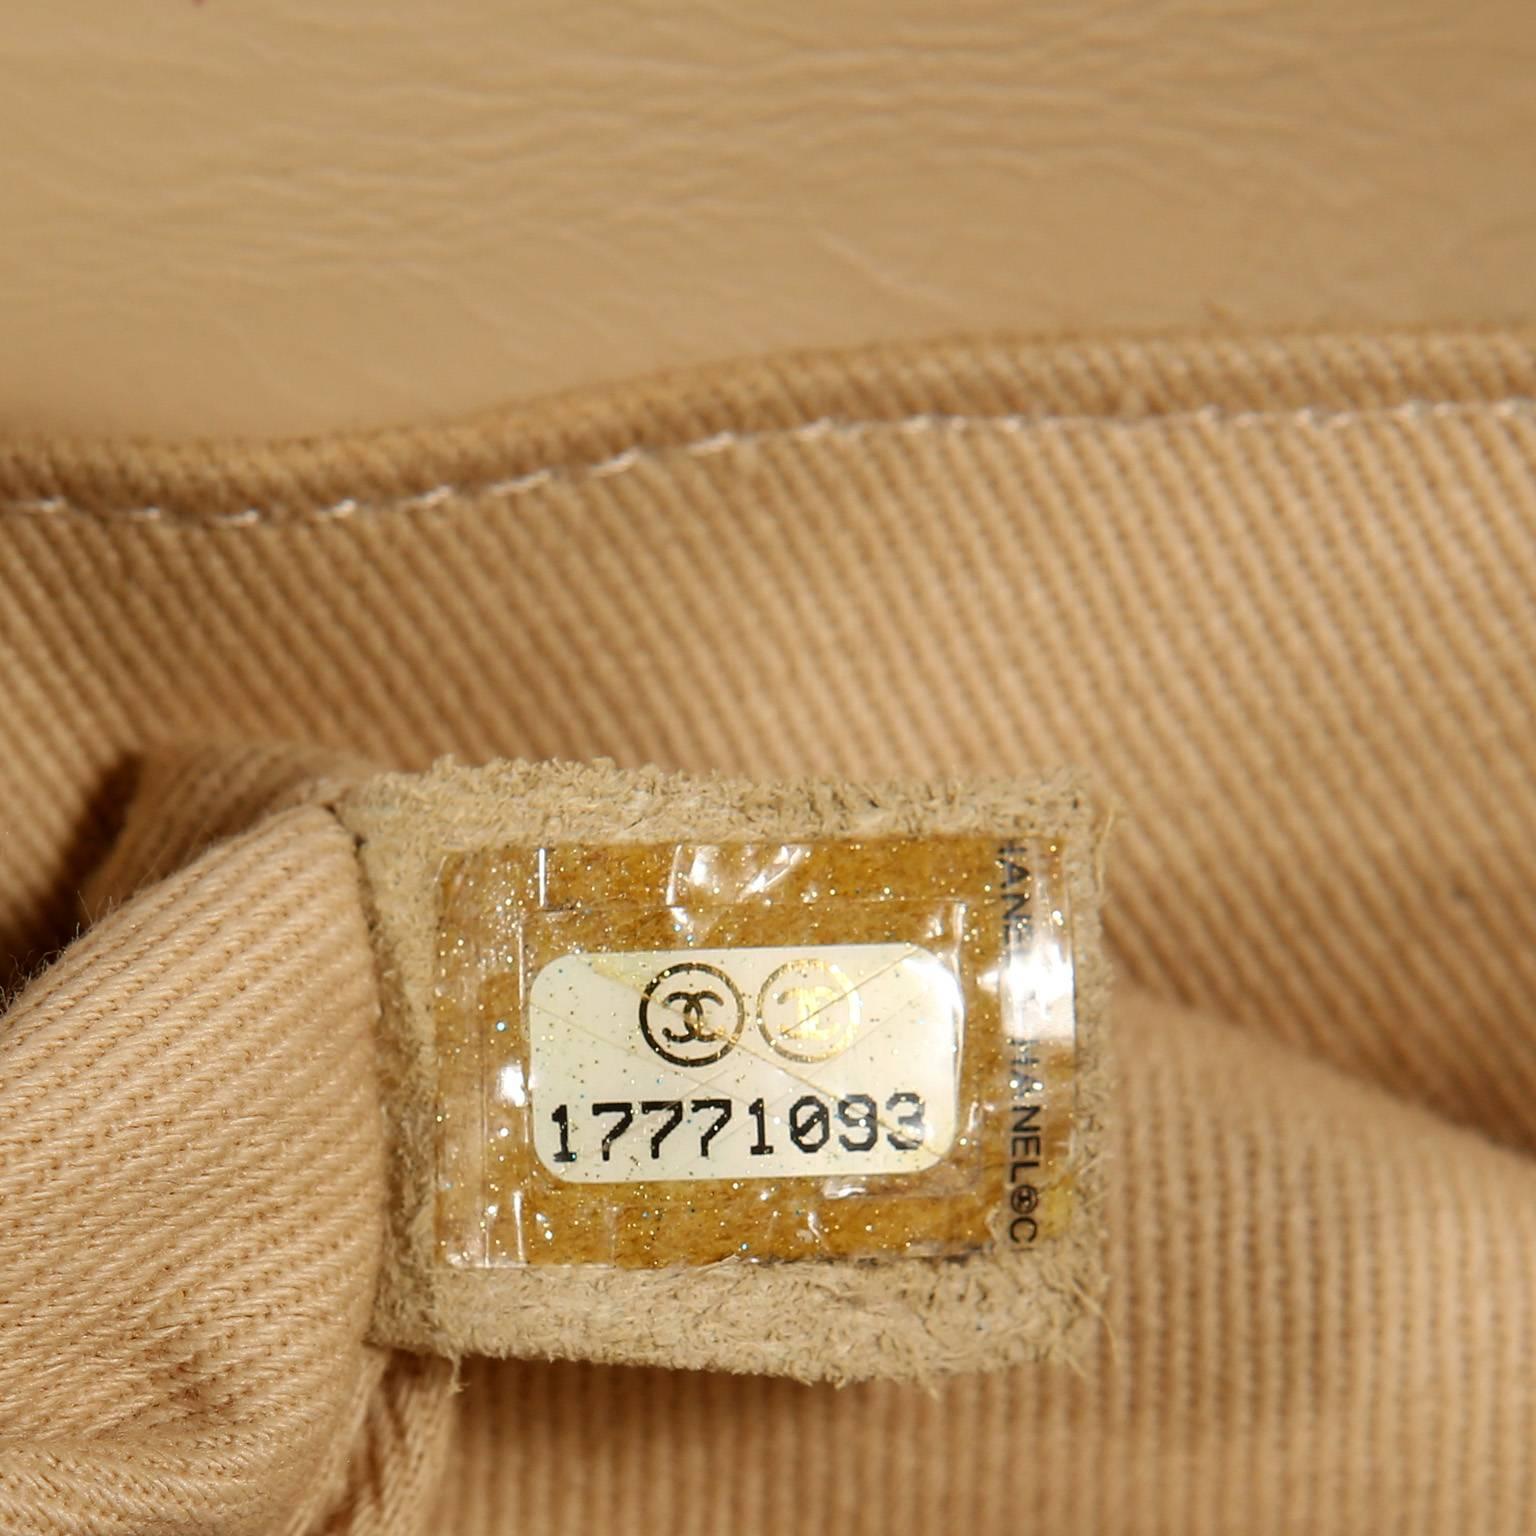 Chanel Beige Leather Medium Boy Bag- Limited Edition 6